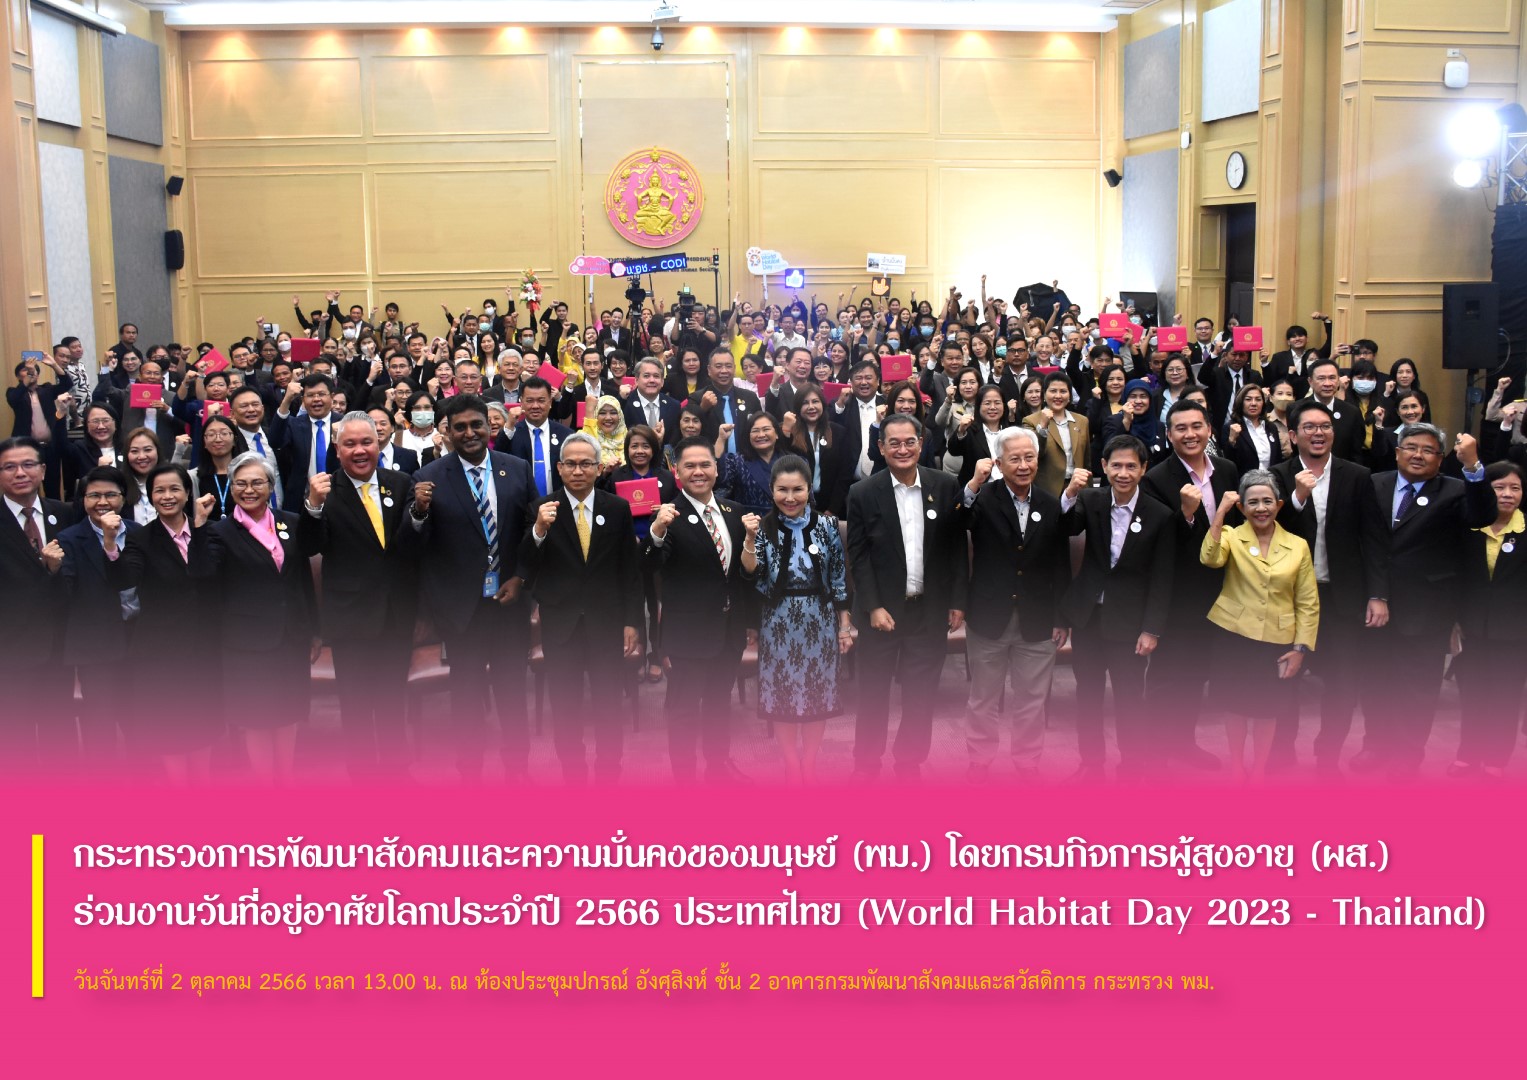 กระทรวงการพัฒนาสังคมและความมั่นคงของมนุษย์ (พม.) โดยกรมกิจการผู้สูงอายุ (ผส.) ร่วมงานวันที่อยู่อาศัยโลกประจำปี 2566 ประเทศไทย (World Habitat Day 2023 - Thailand)